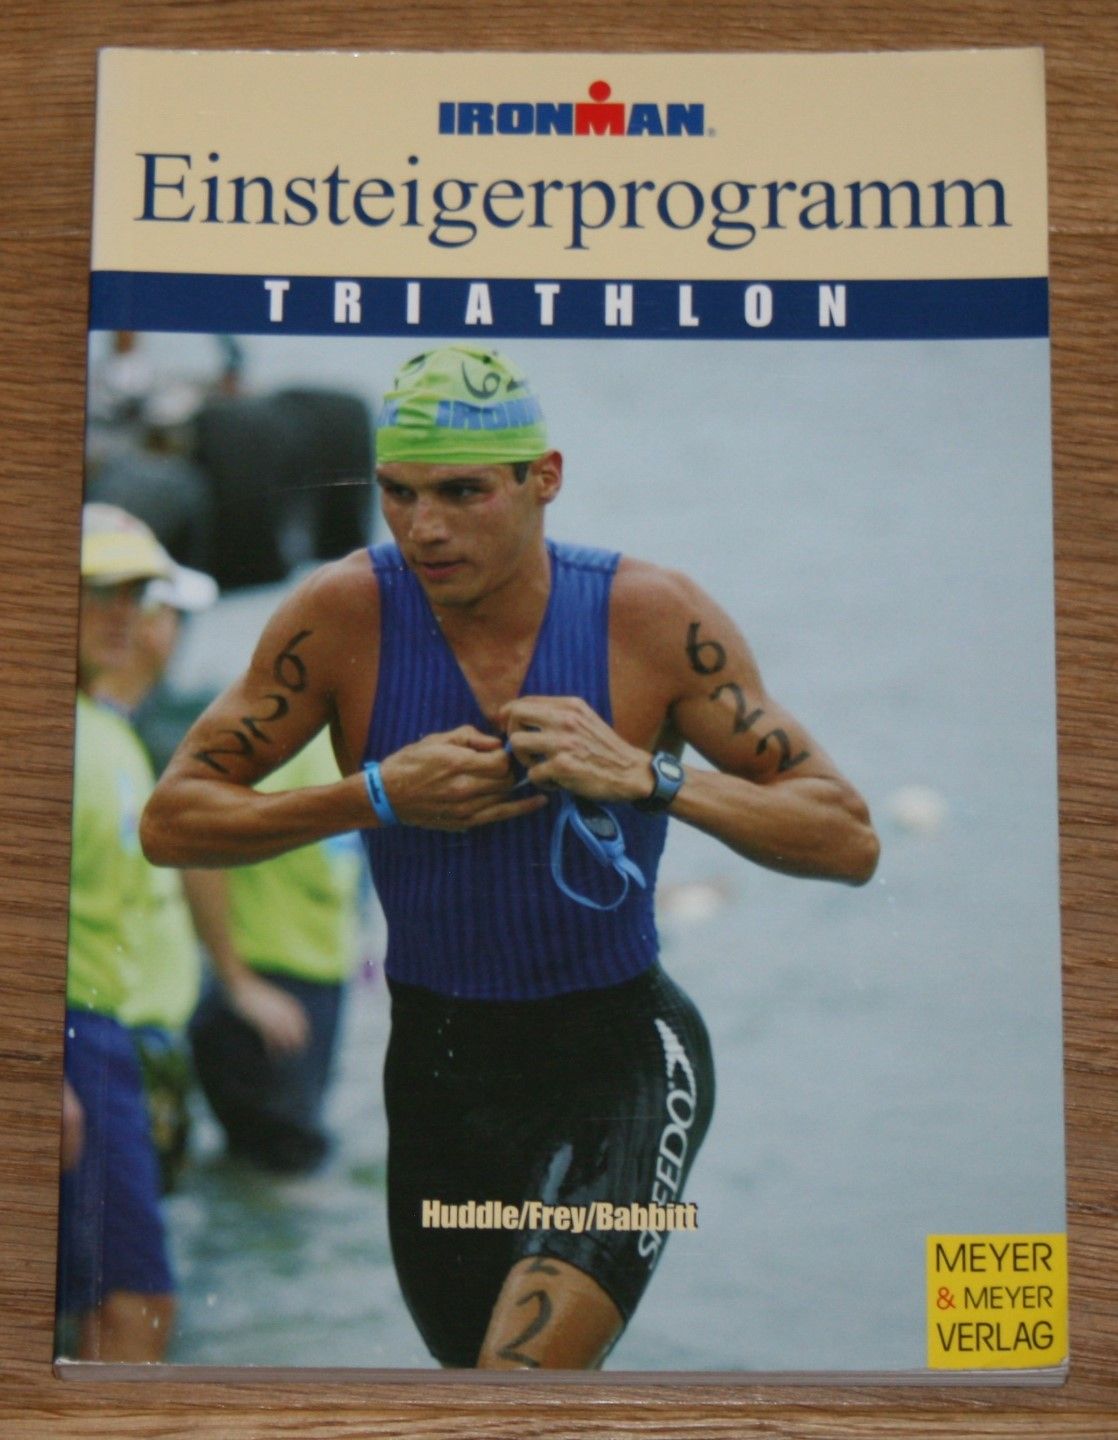 Ironman Edition. Triathlon. Einsteigerprogramm. - Huddle, Paul, Roch Frey und Bob Babbitt